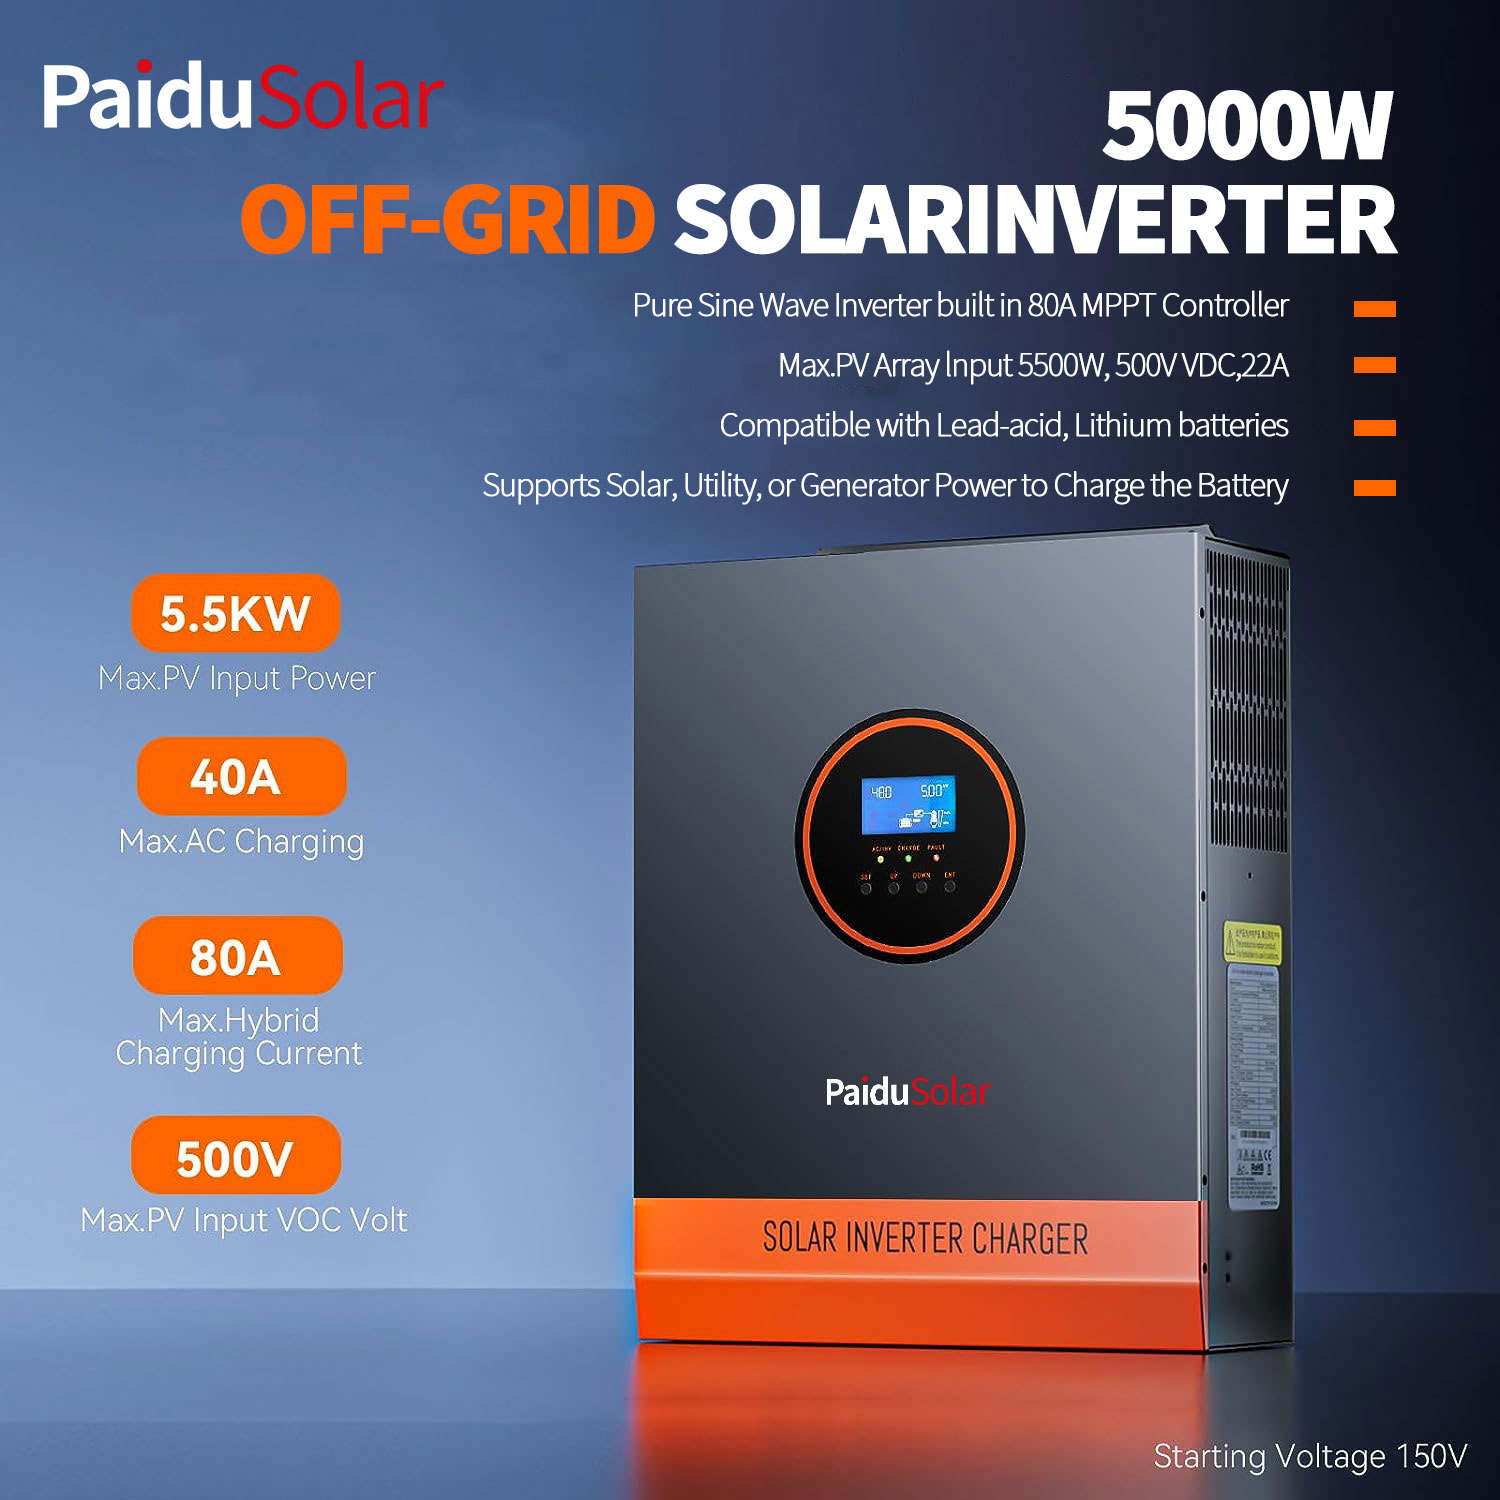 PaiduSolar 5000W saulės energijos keitiklis 48V 110V neprijungtas prie tinklo 5KW galios keitiklis, skirtas saulės energijai Charge_2nln